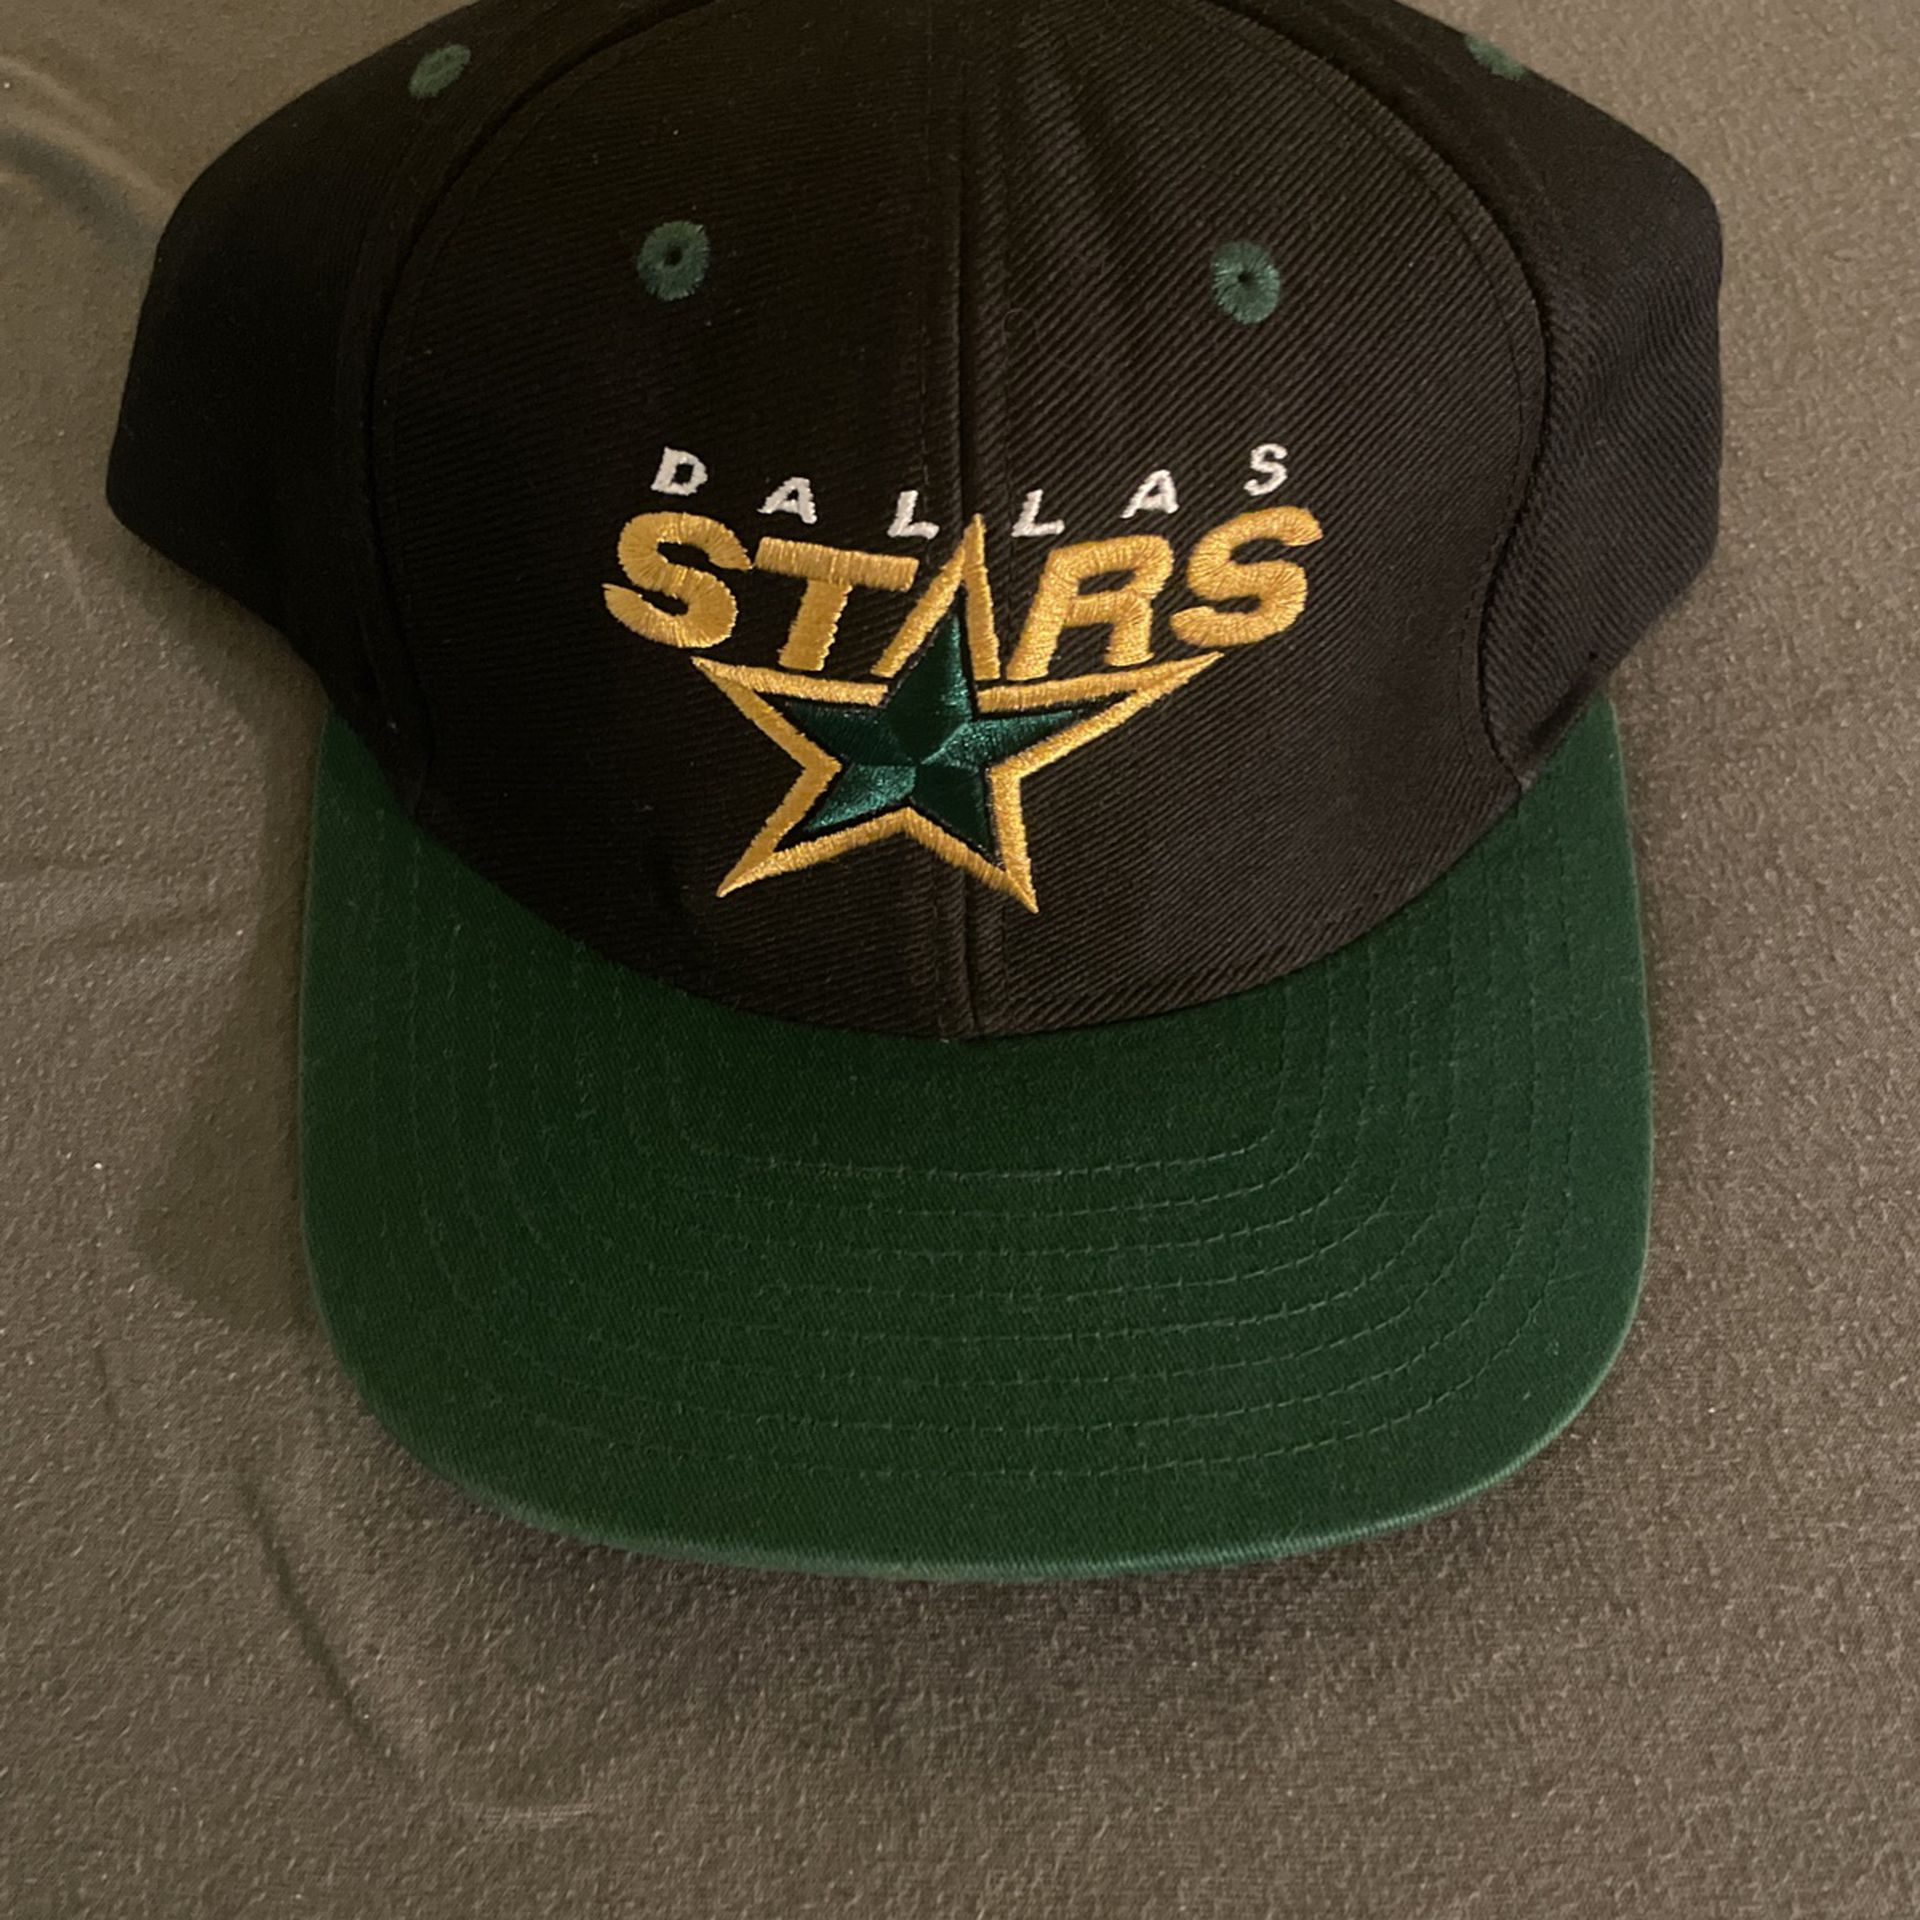 Dallas Stars Hat for Sale in Phoenix, AZ - OfferUp